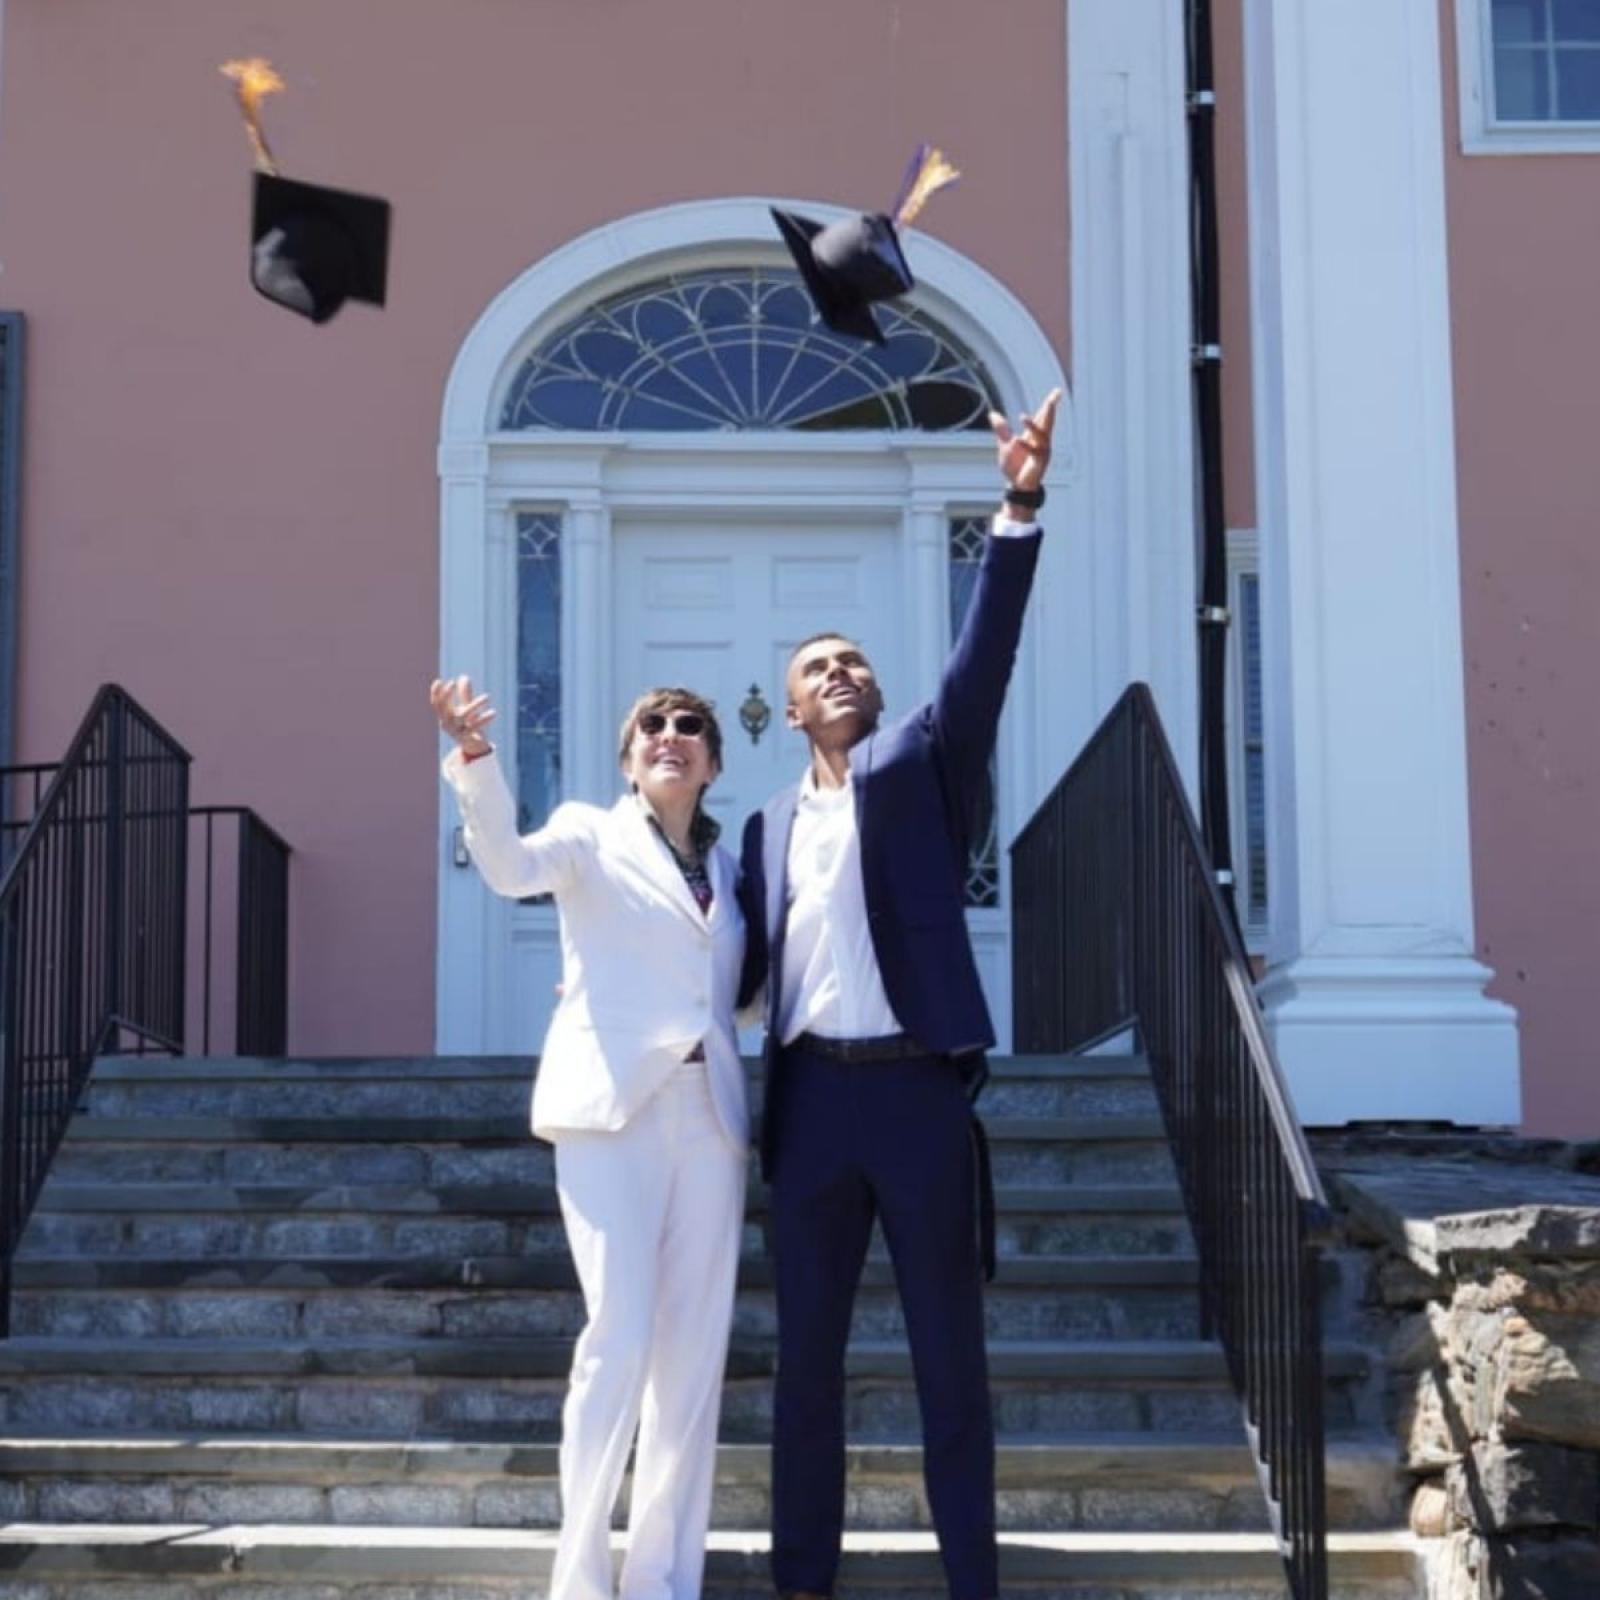 Graduates throwing caps in air